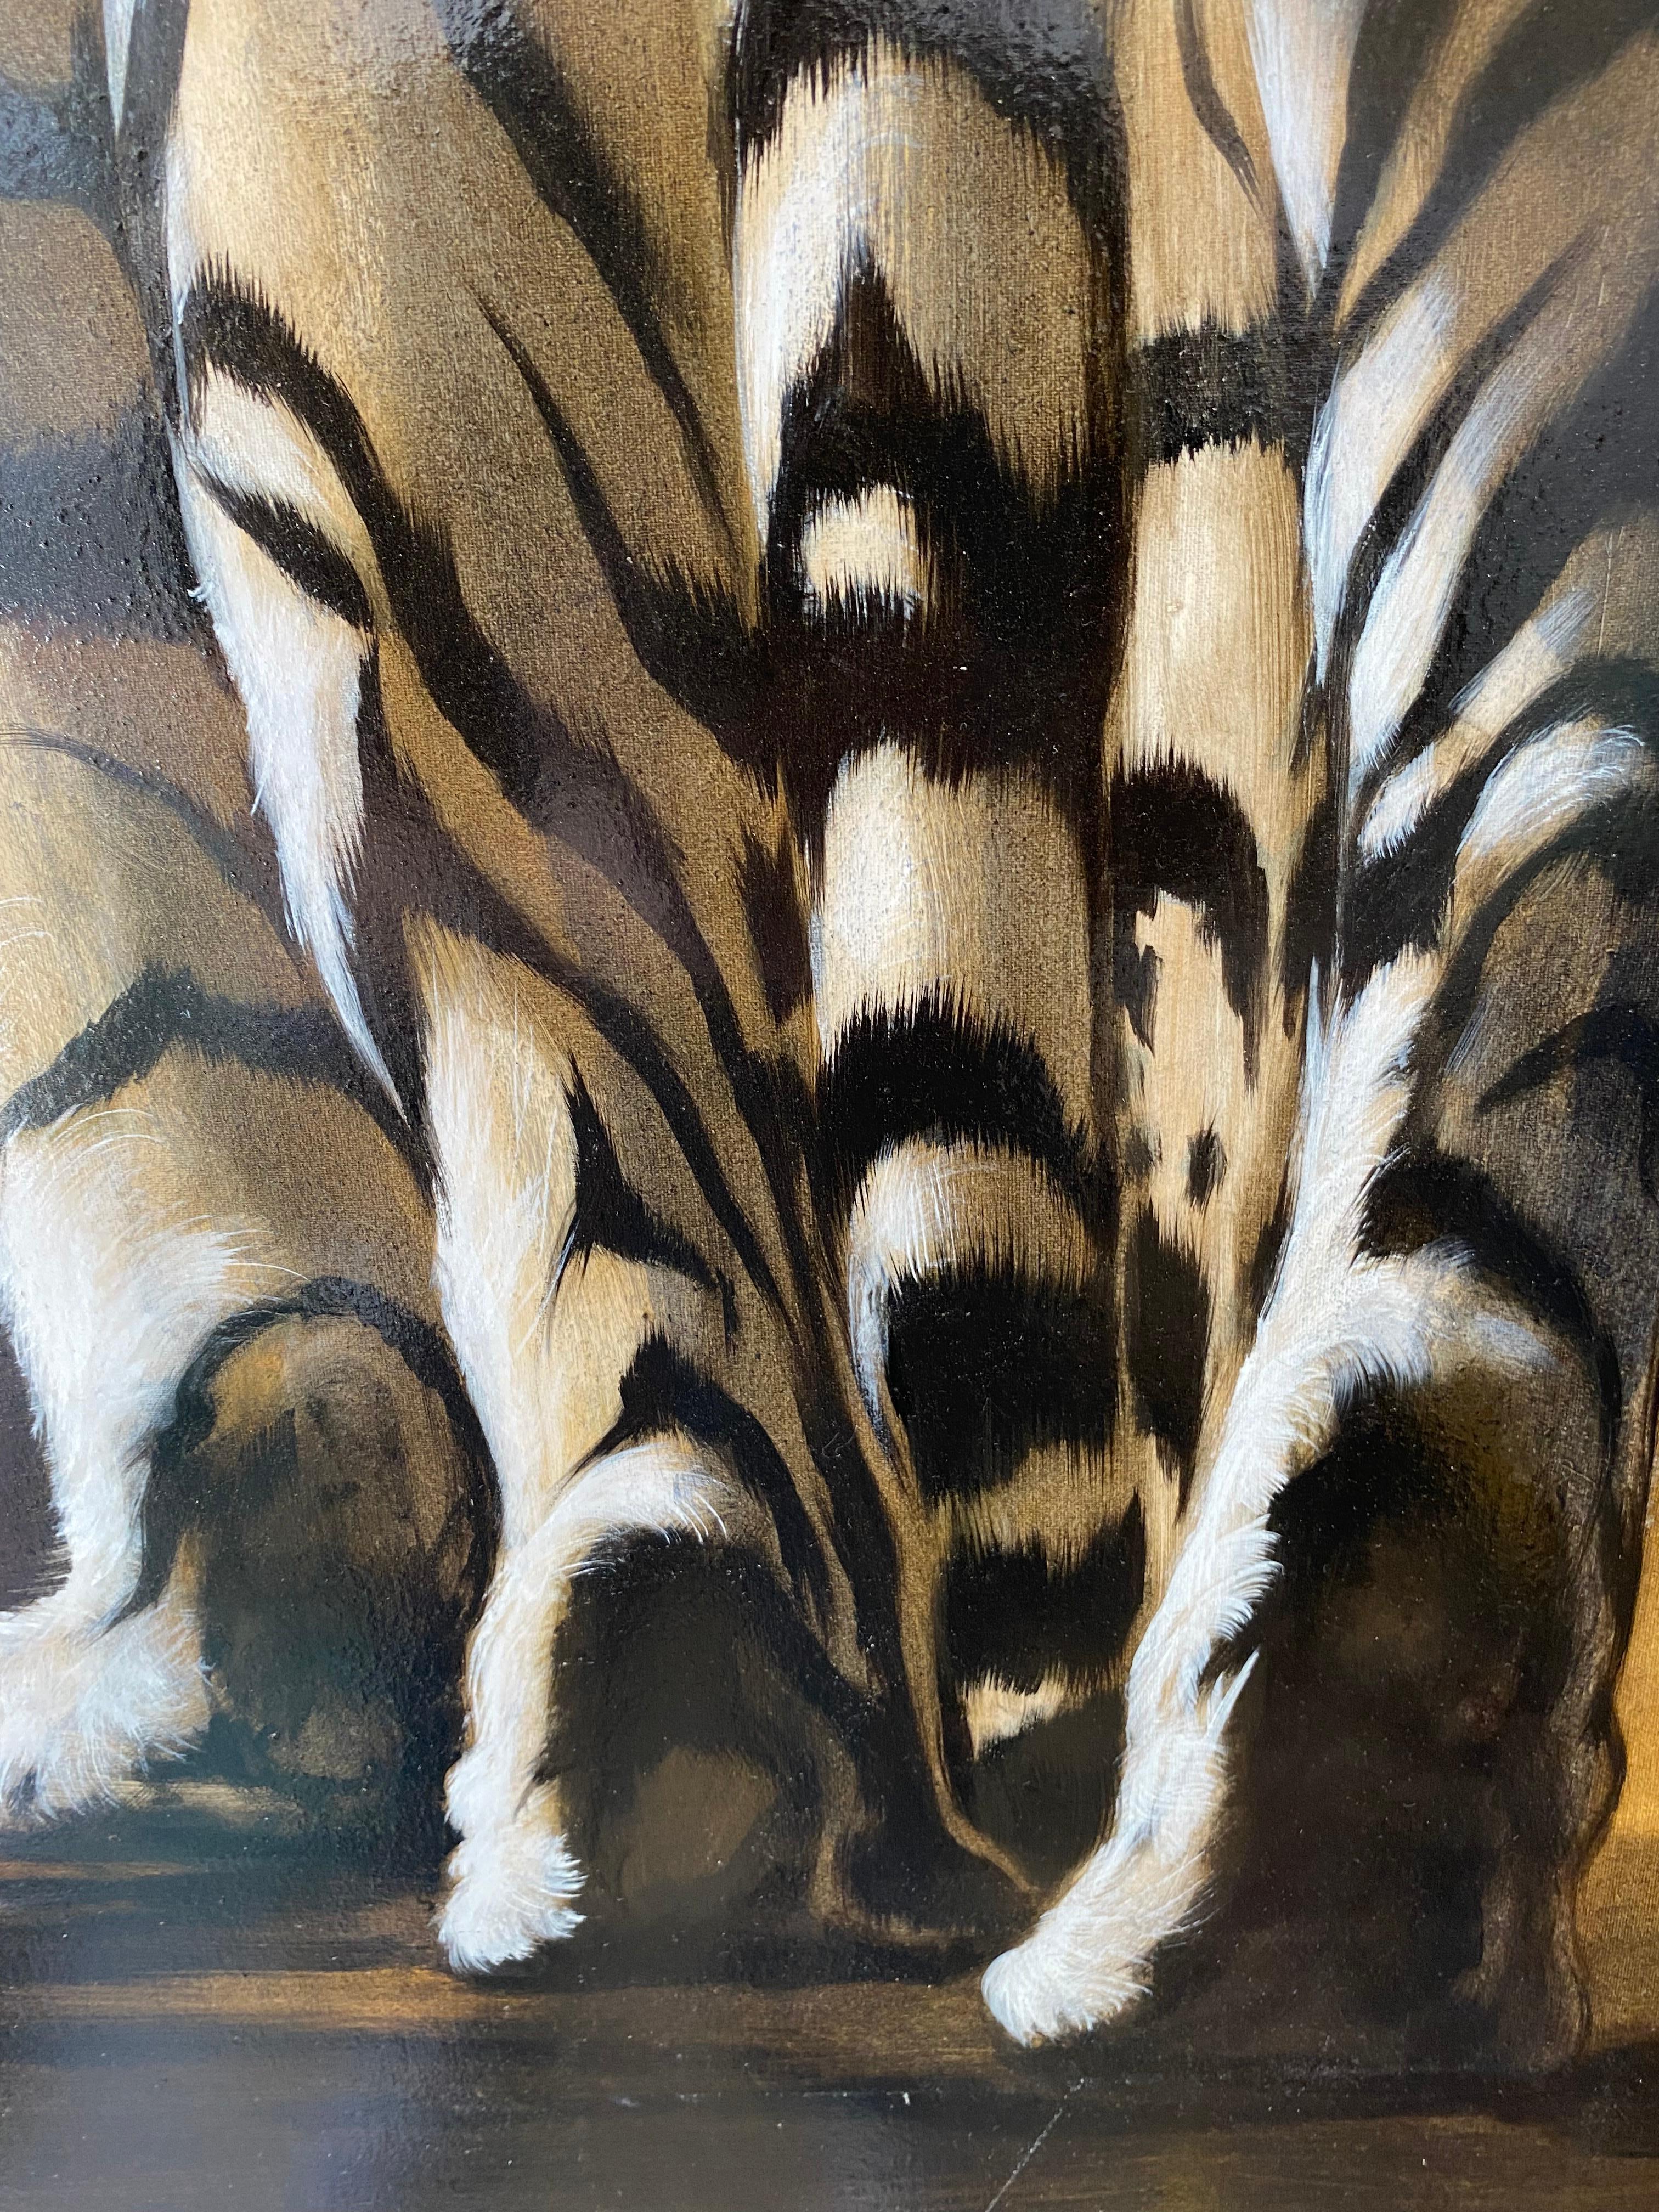 André Ferrand - Le Tigre

Huile sur toile
2010
Dimensions : 121 x 94
1900
